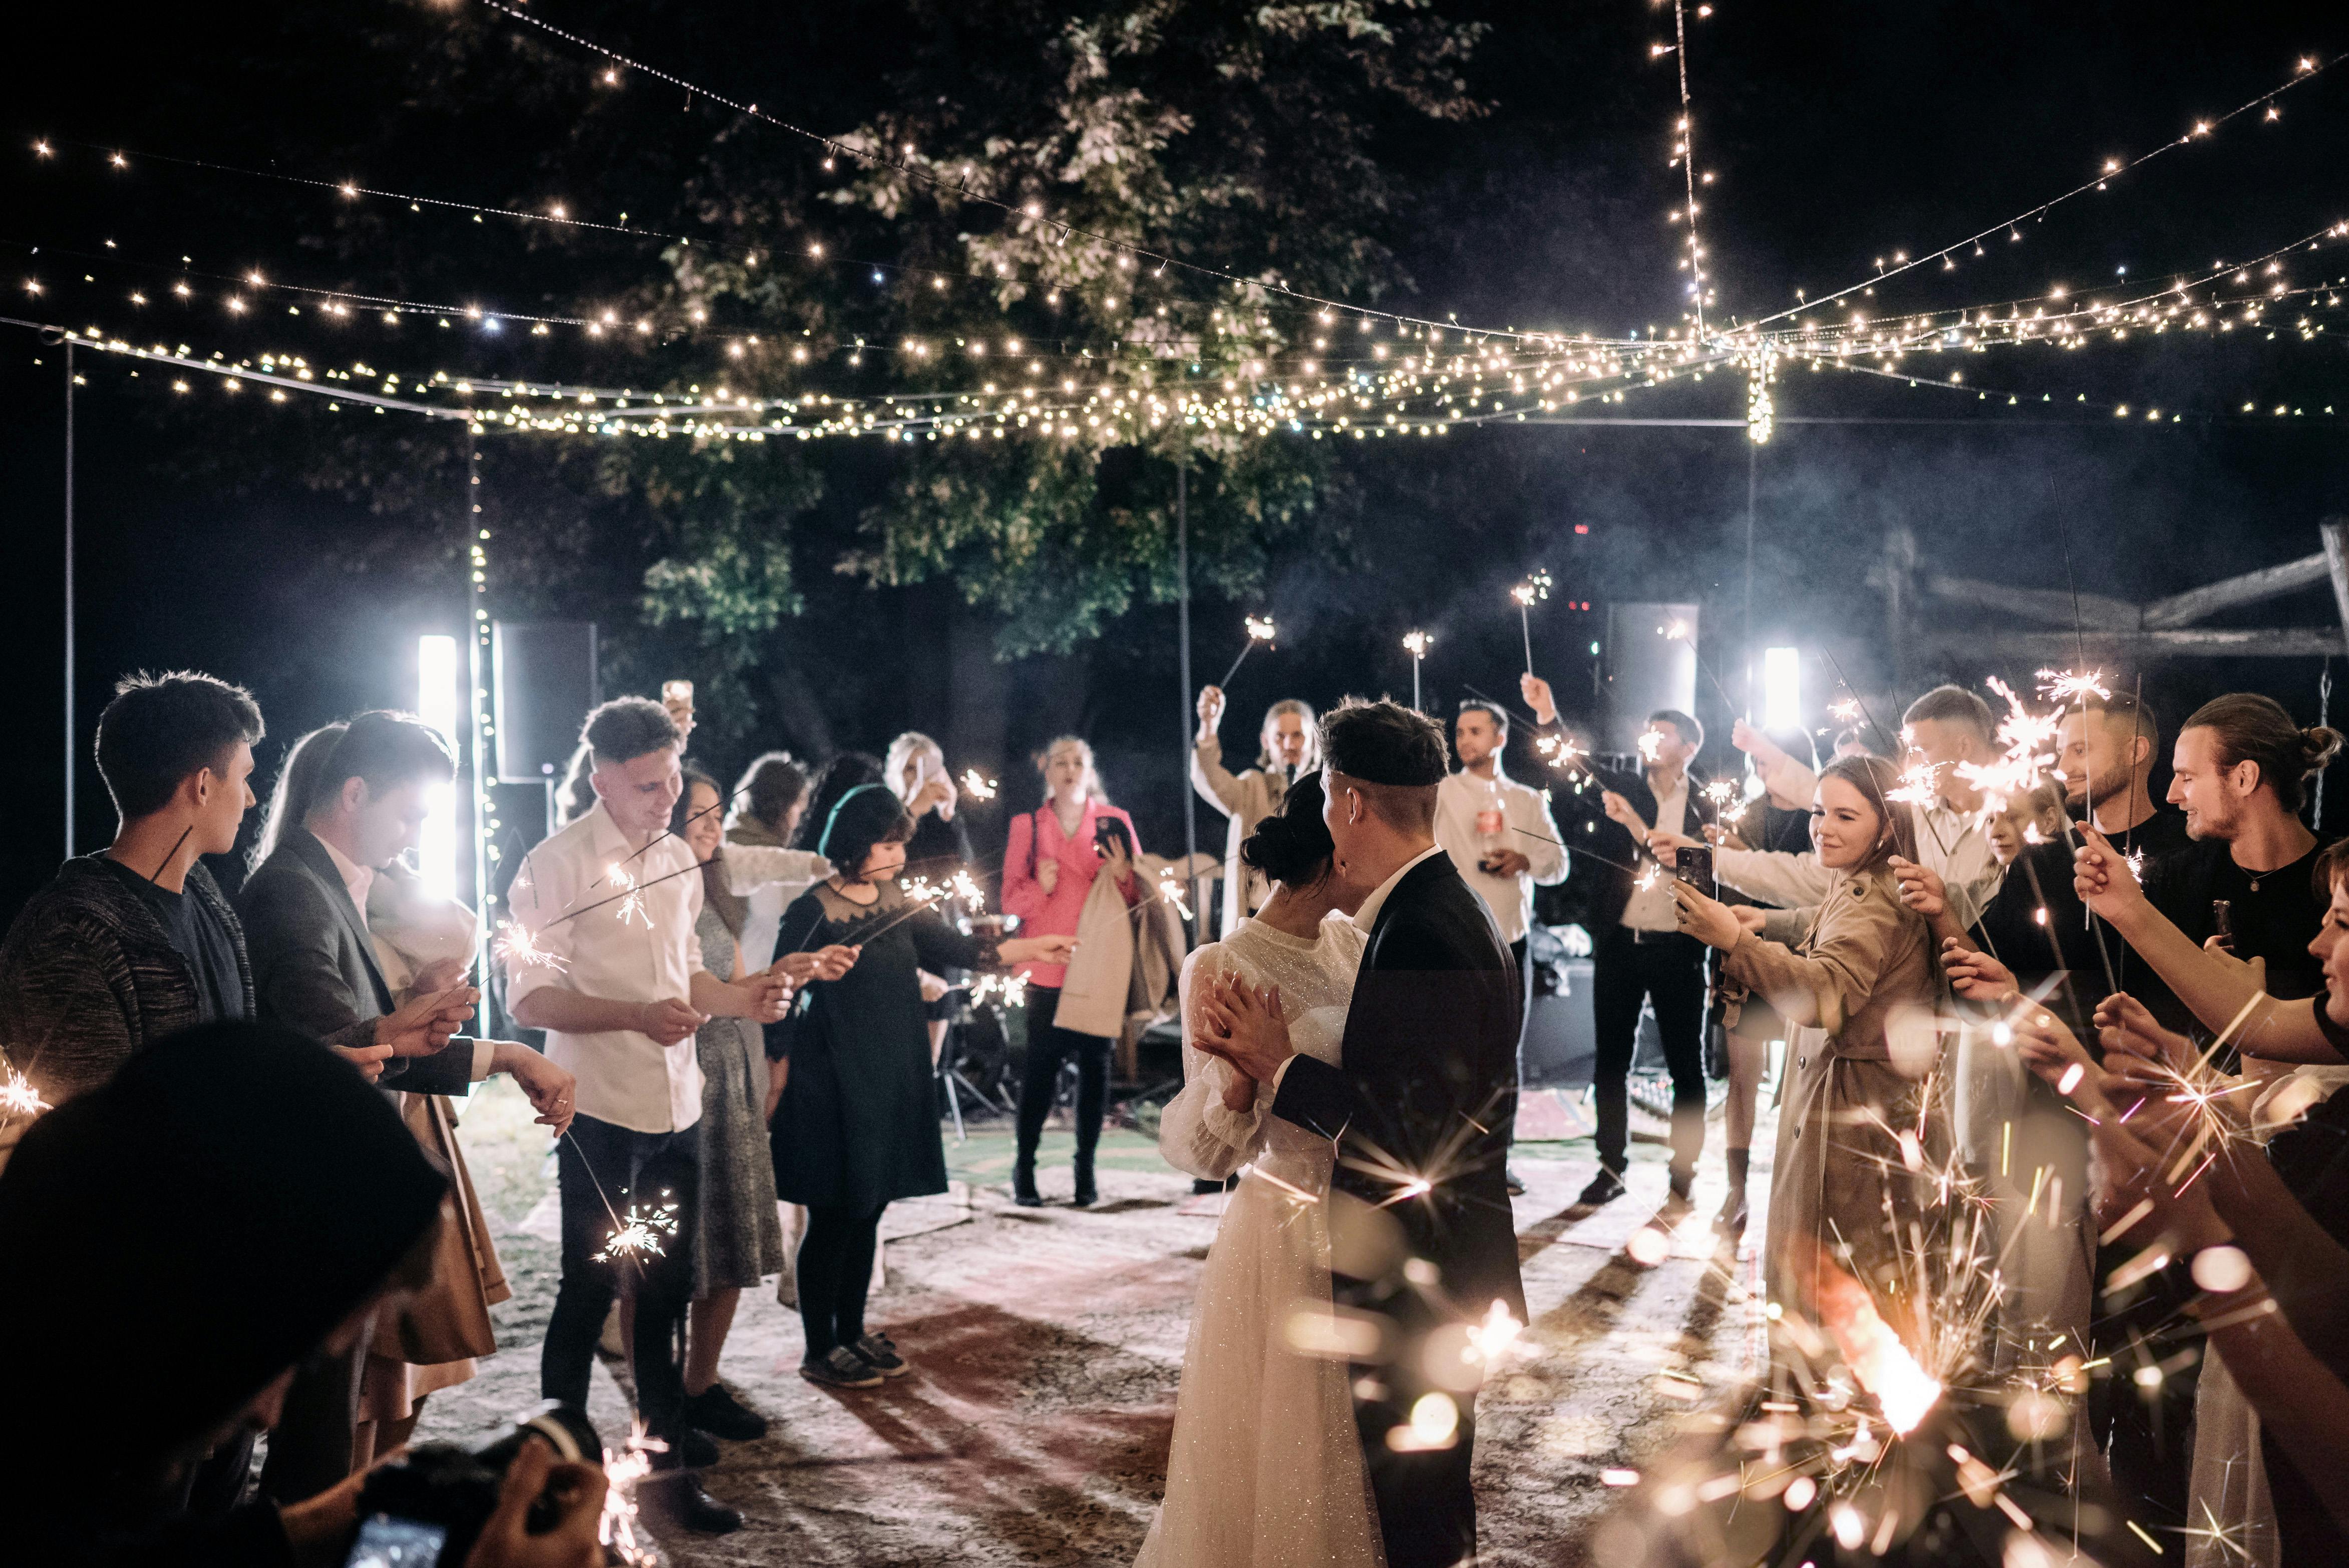 Los invitados a la boda bailan toda la noche con la pareja nupcial | Fuente: Pexels